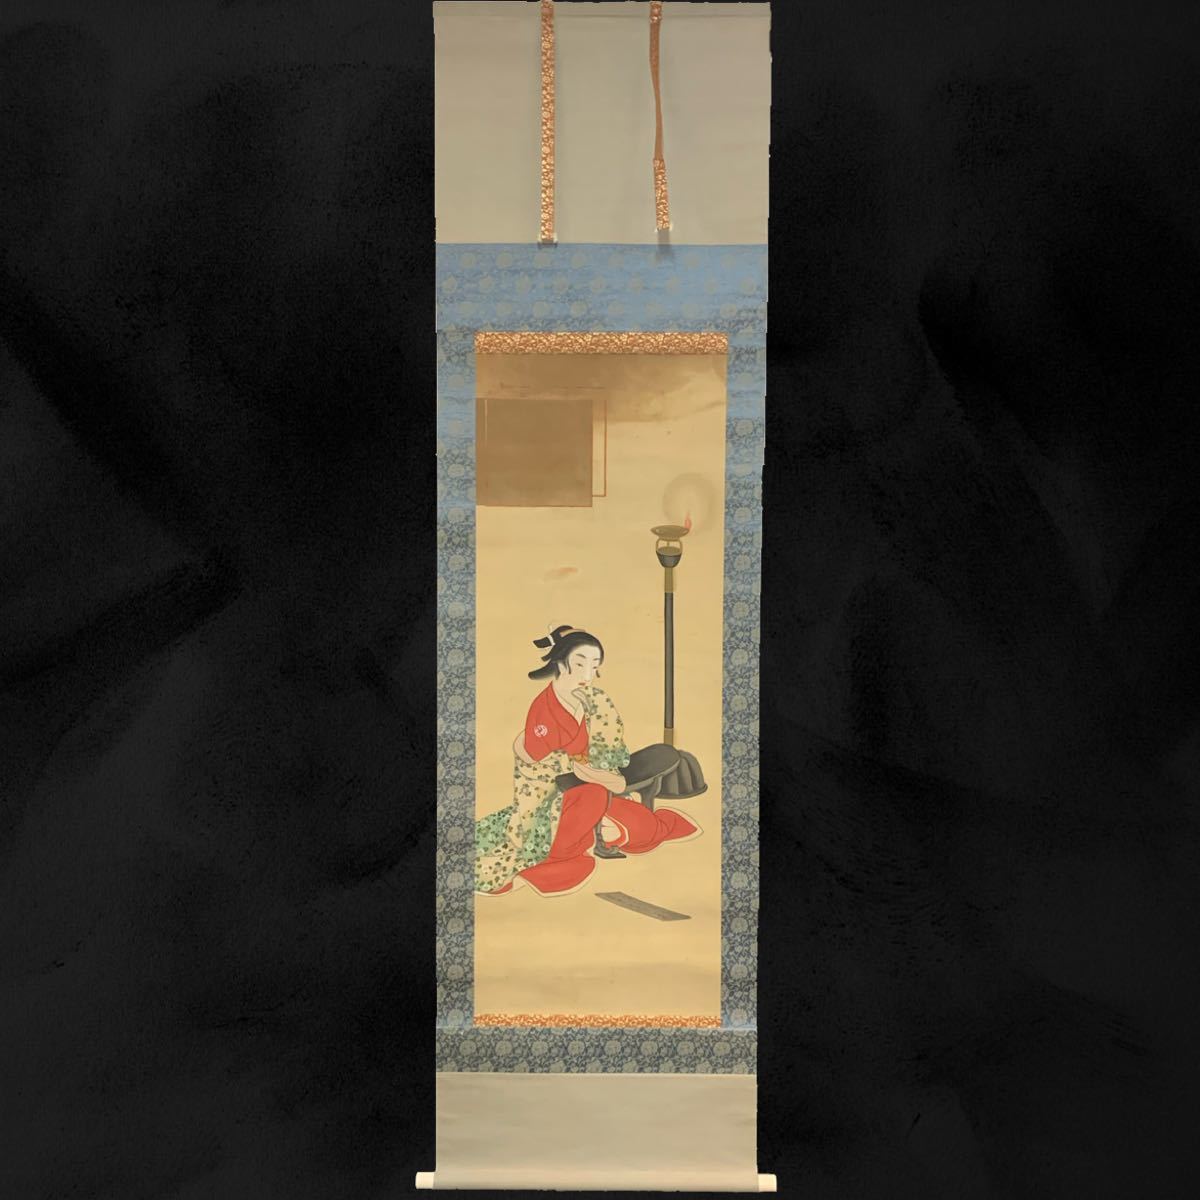 [副本](鹤67)时代美女画挂轴丝绸约。 187 x 52 厘米, 绘画, 日本画, 人, 菩萨